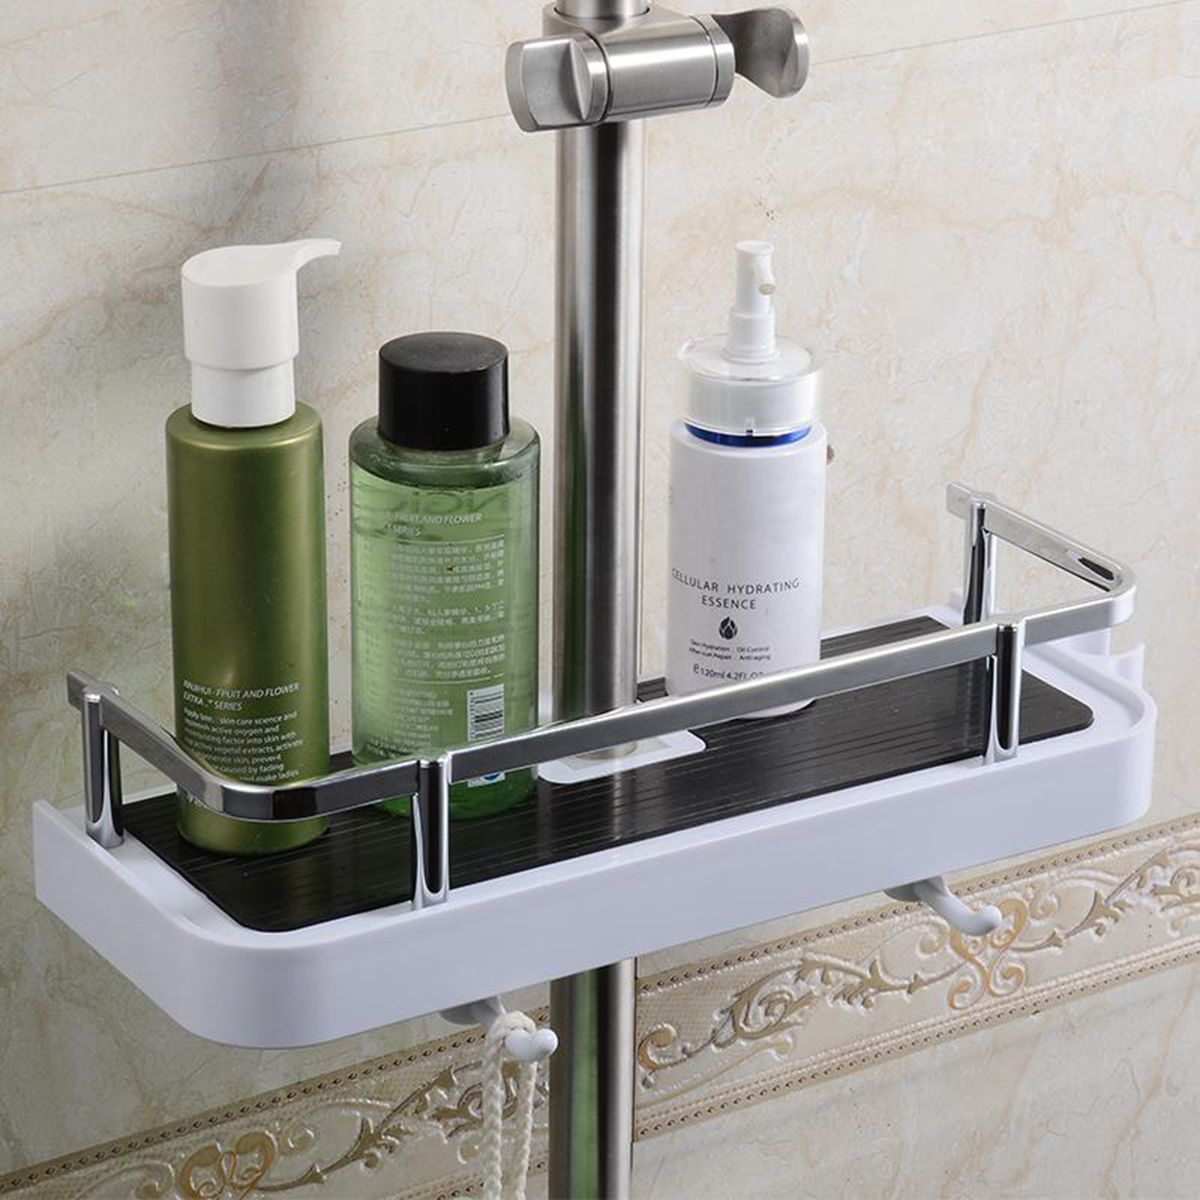 Bathroom-Pole-Shelf-Shower-Storage-Caddy-Rack-Organiser-Tray-Holder-Drain-Shelf-1165844